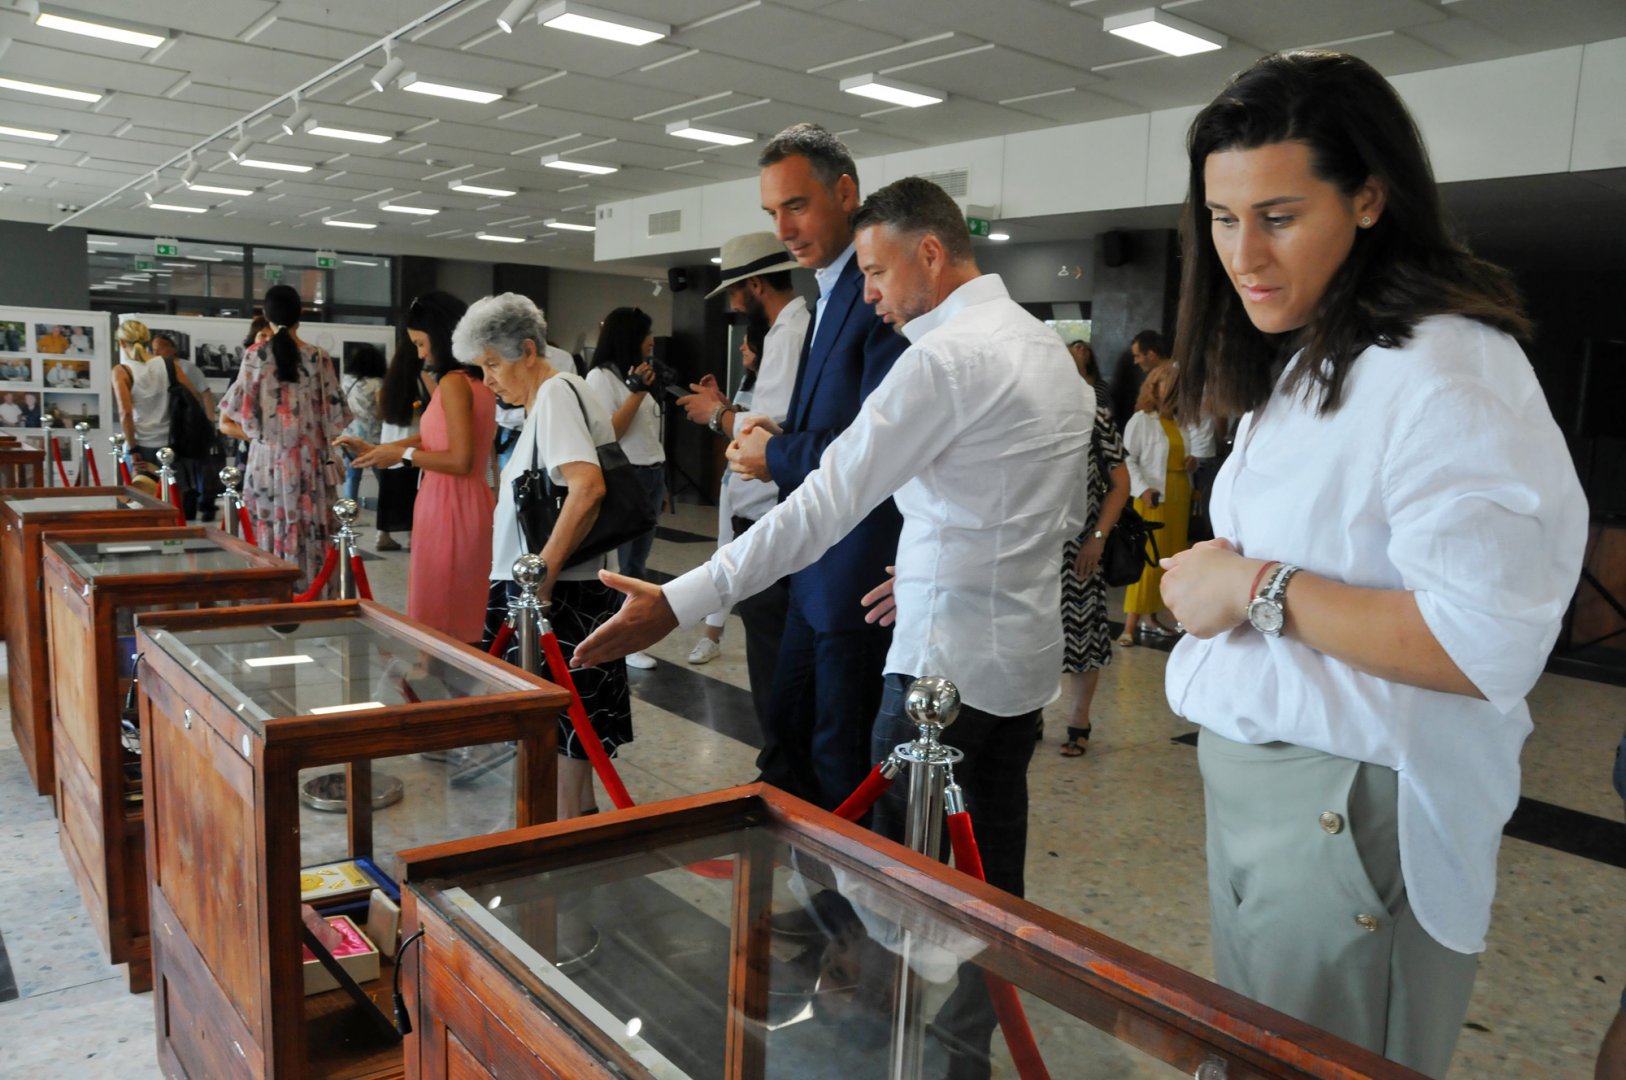 Кметът на Бургас Димитър Николов откри изложбата с лични вещи на Тоно Русев, подредена във фойаето на Културен дом на НХК. Снимки Черноморие-бг Ч